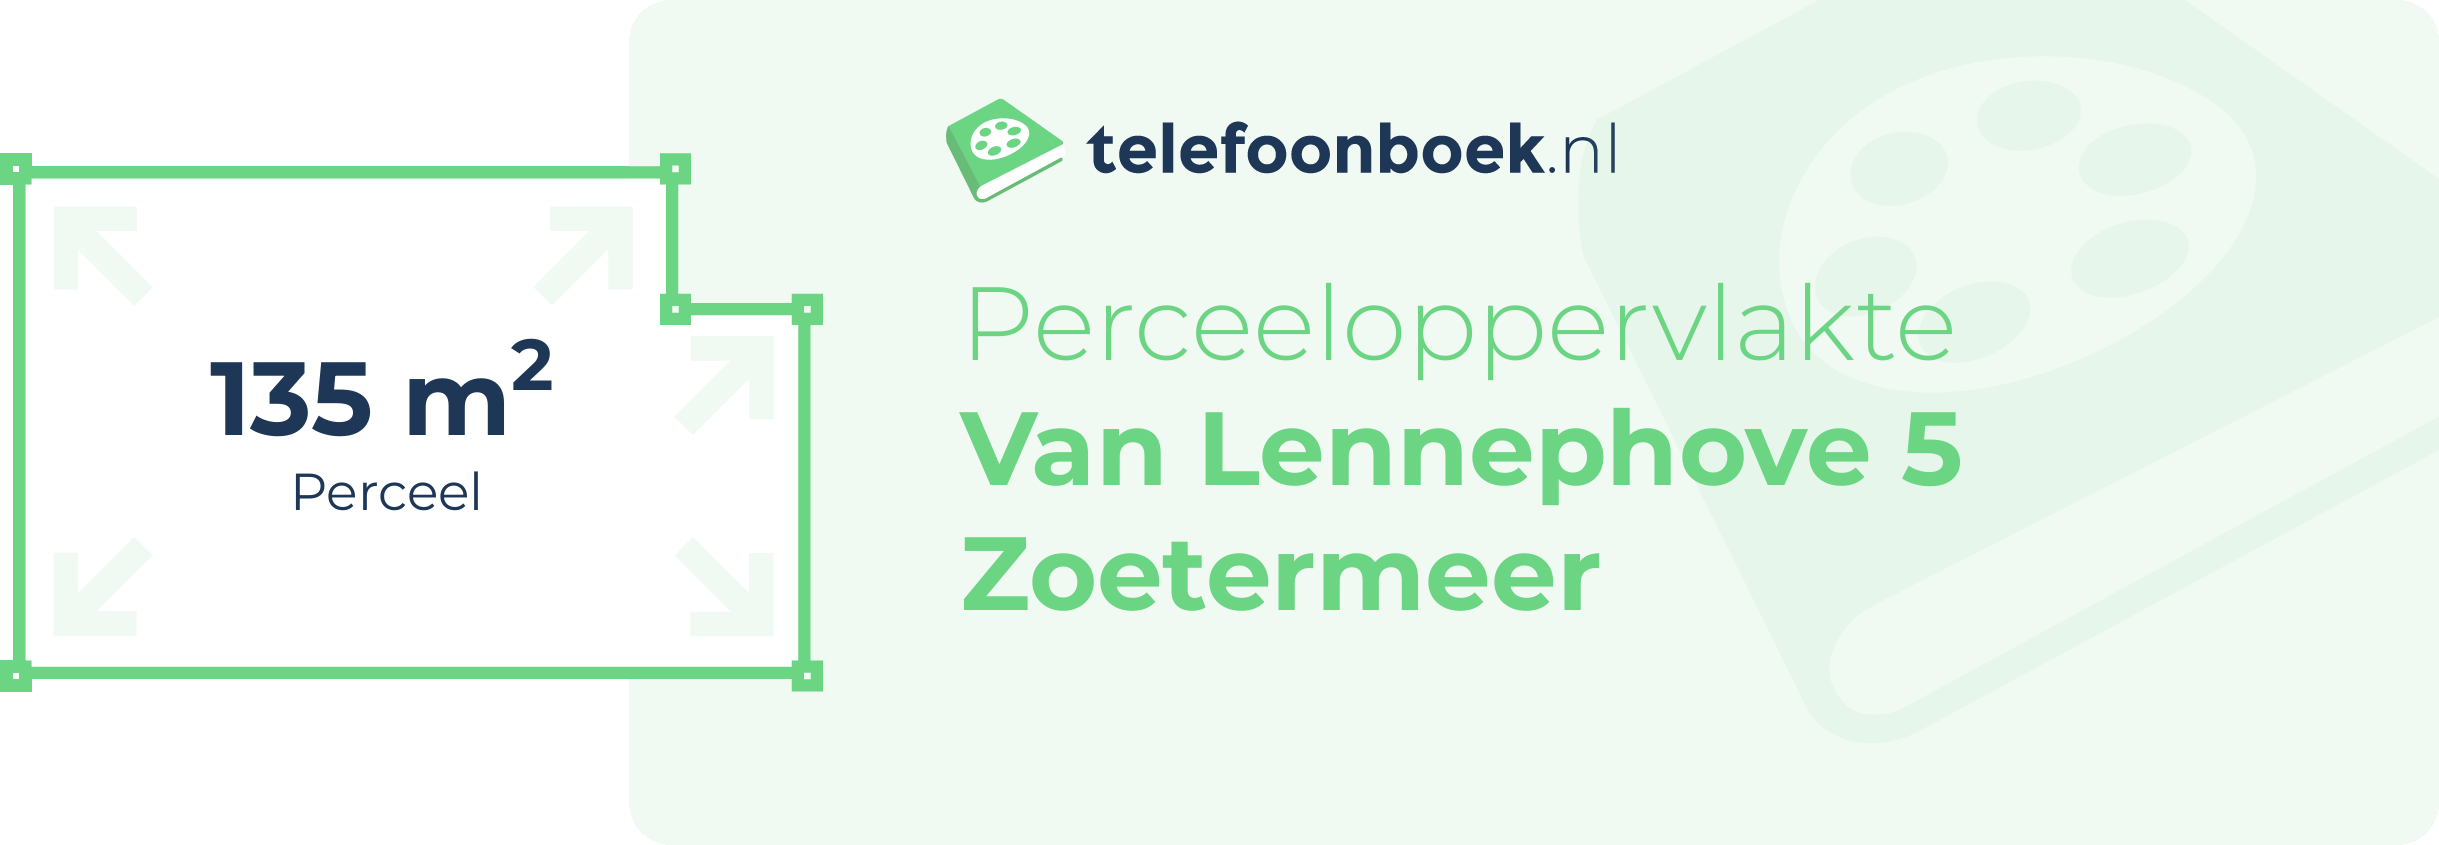 Perceeloppervlakte Van Lennephove 5 Zoetermeer